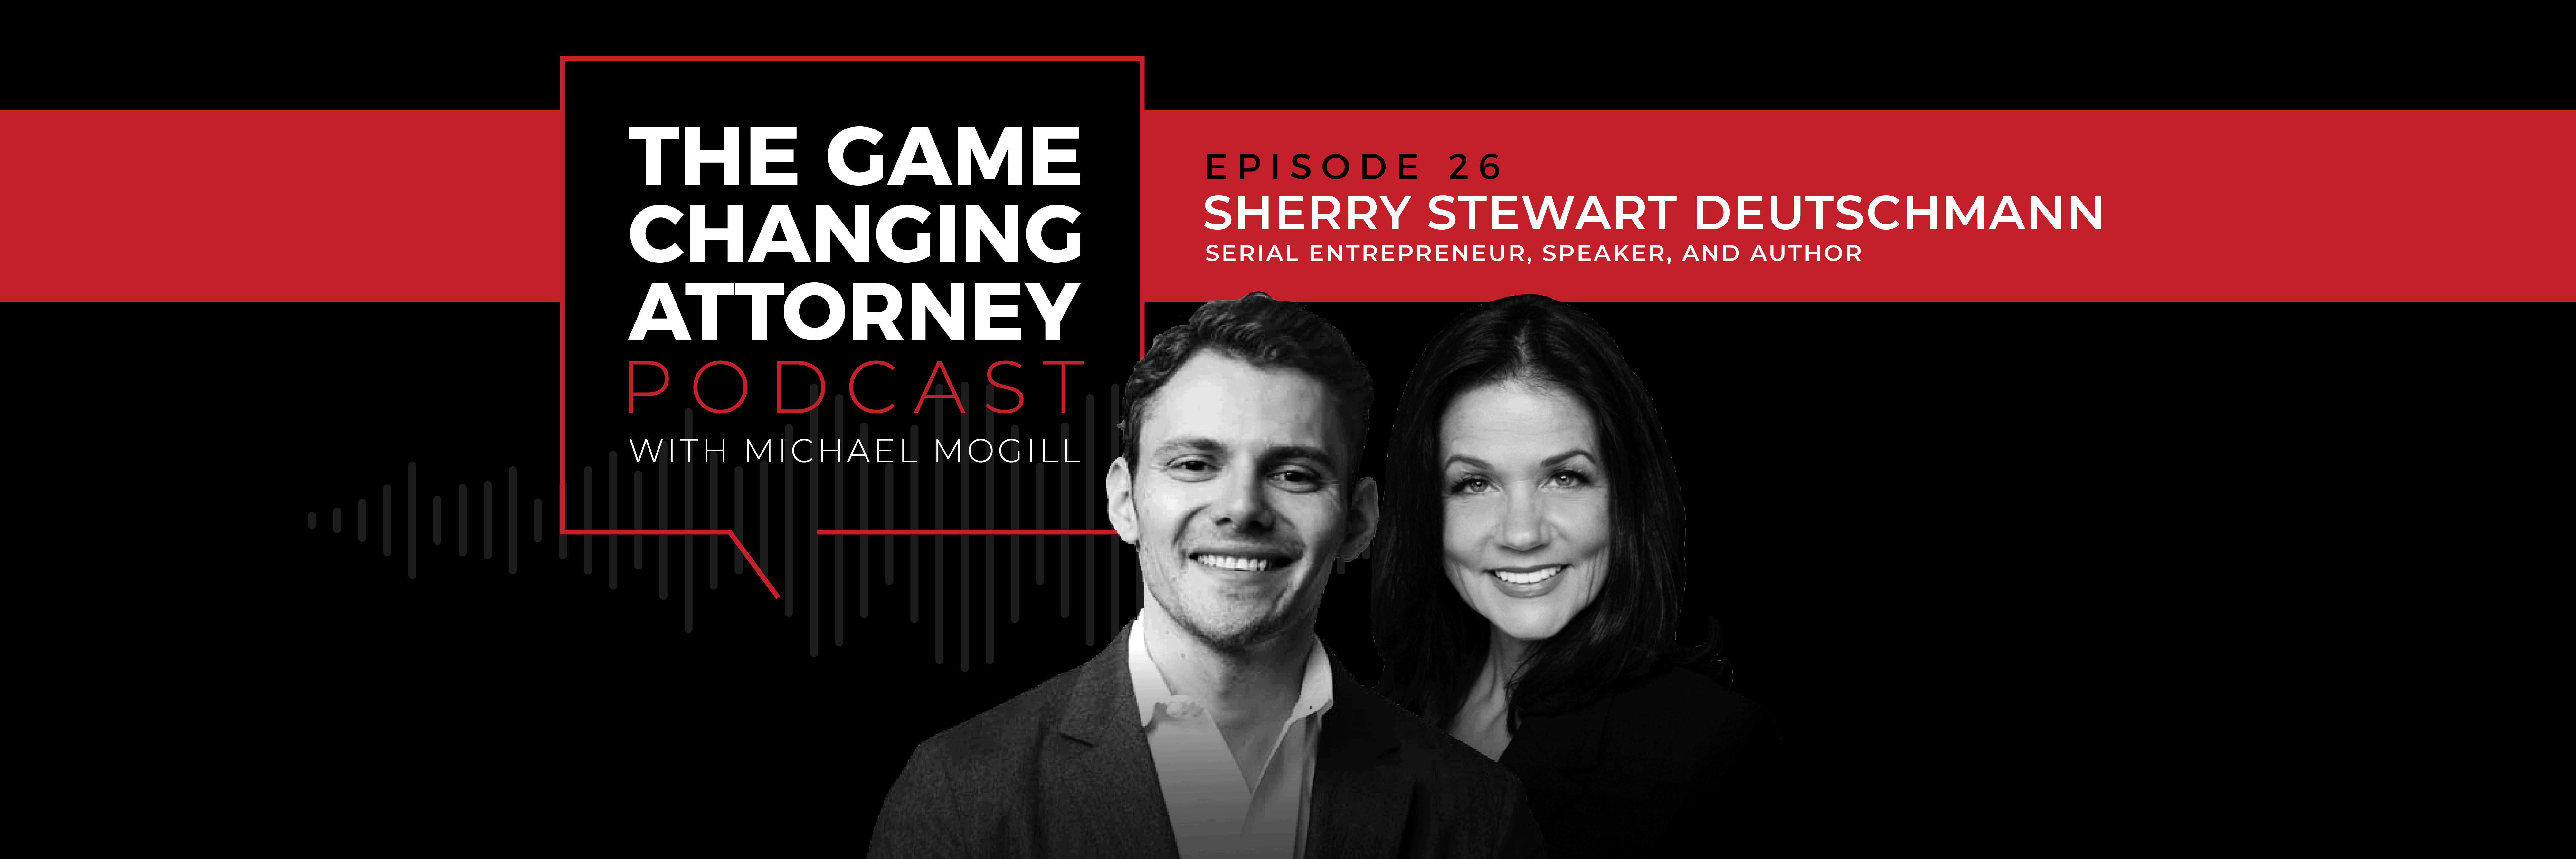 Sherry Stewart Deutschmann - The Game Changing Attorney Podcast - Desktop